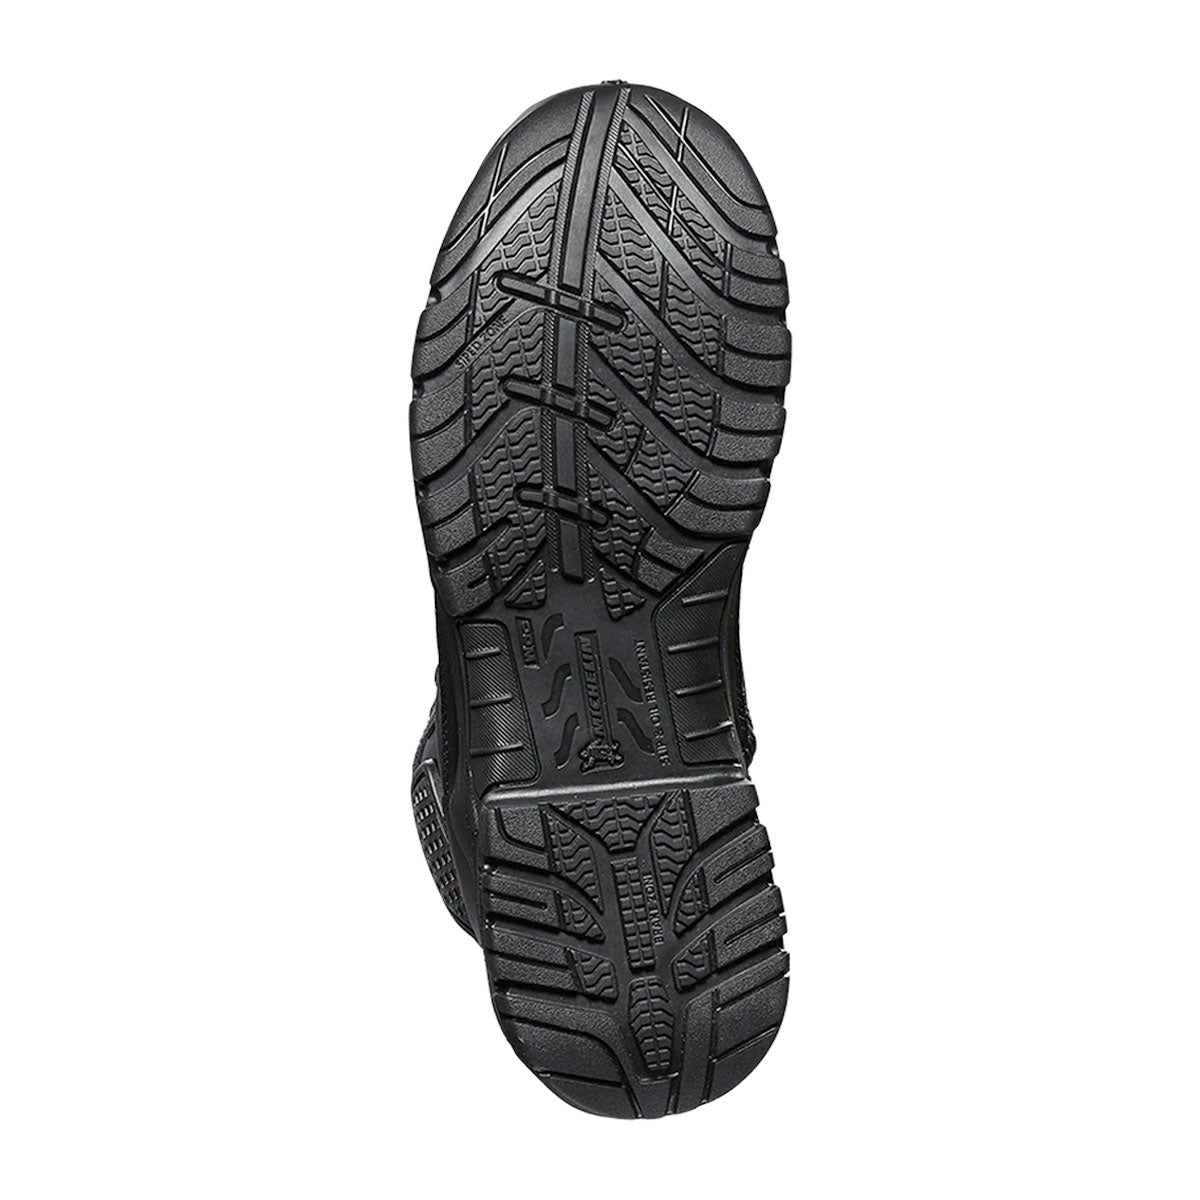 Magnum Strike Force 6.0 Leather Side-Zip Composite Toe Waterproof Men's Boot Black MSF645 Footwear Magnum Footwear Tactical Gear Supplier Tactical Distributors Australia